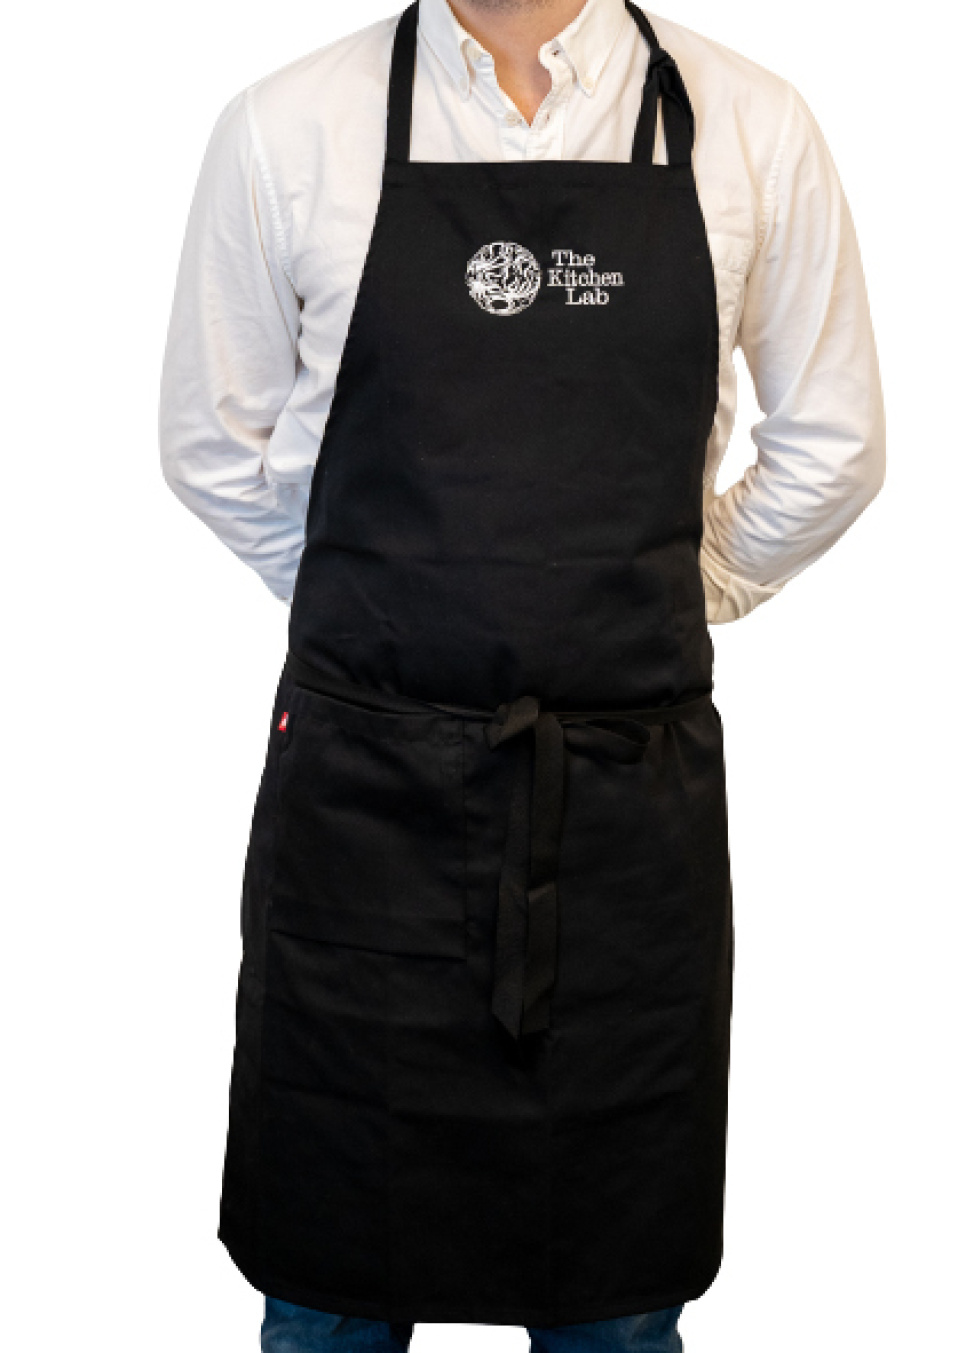 Tablier de poitrine avec logo - KitchenLab dans le groupe Cuisine / Habits de cuisine / Tabliers l\'adresse The Kitchen Lab (1317-27450)